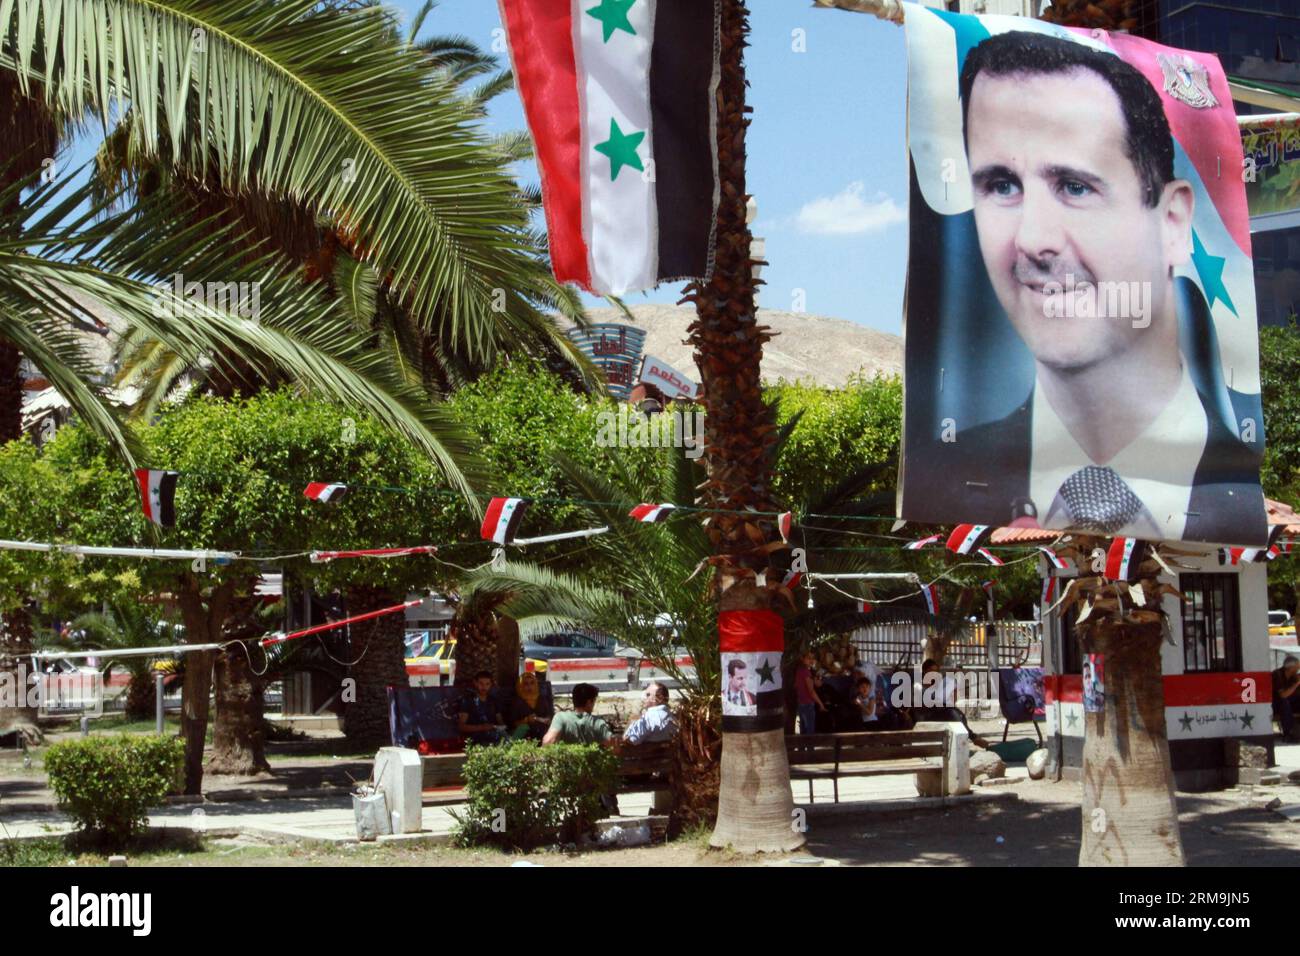 Les gens marchent sous les affiches des élections présidentielles syriennes à Damas, le 25 mai 2014. Les campagnes électorales en Syrie ont débuté le 11 mai et se termineraient 24 heures avant le scrutin. (Xinhua/Bassem Tellawi) SYRIE-DAMAS-POLITIQUE-ÉLECTION PUBLICATIONxNOTxINxCHN les célébrités marchent sous les affiches de la Syrie S élections présidentielles à Damas LE 25 2014 mai les campagnes électorales en Syrie ont commencé LE 11 mai et se termineront 24 heures avant le vote XINHUA Bassem Syrie Damas ÉLECTION POLITIQUE PUBLICATIONxNOTxINxCHN Banque D'Images